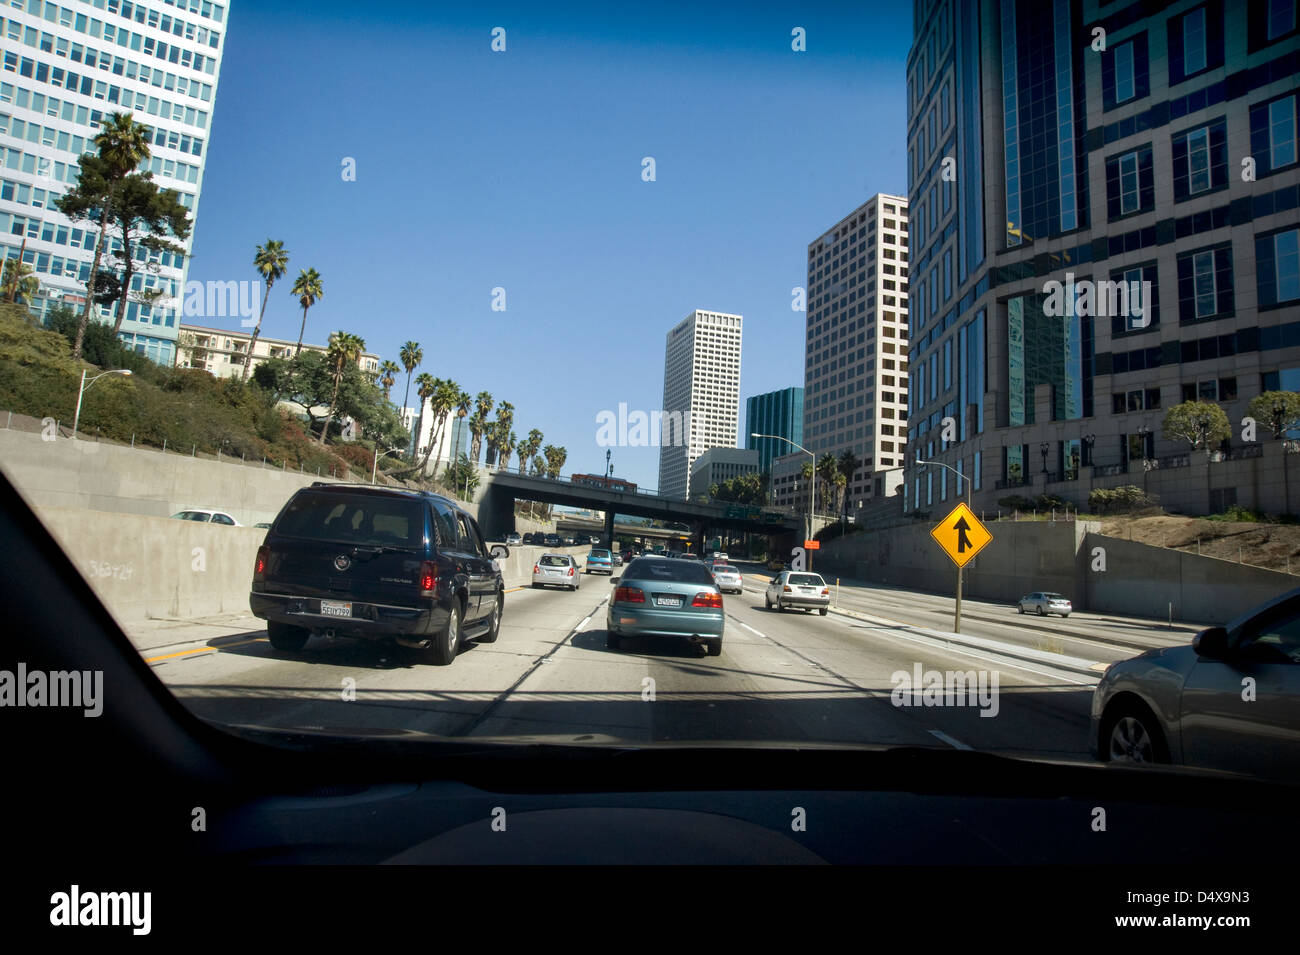 Voir d'autoroute au centre-ville de Los Angeles par le biais de pare-brise de voiture Banque D'Images